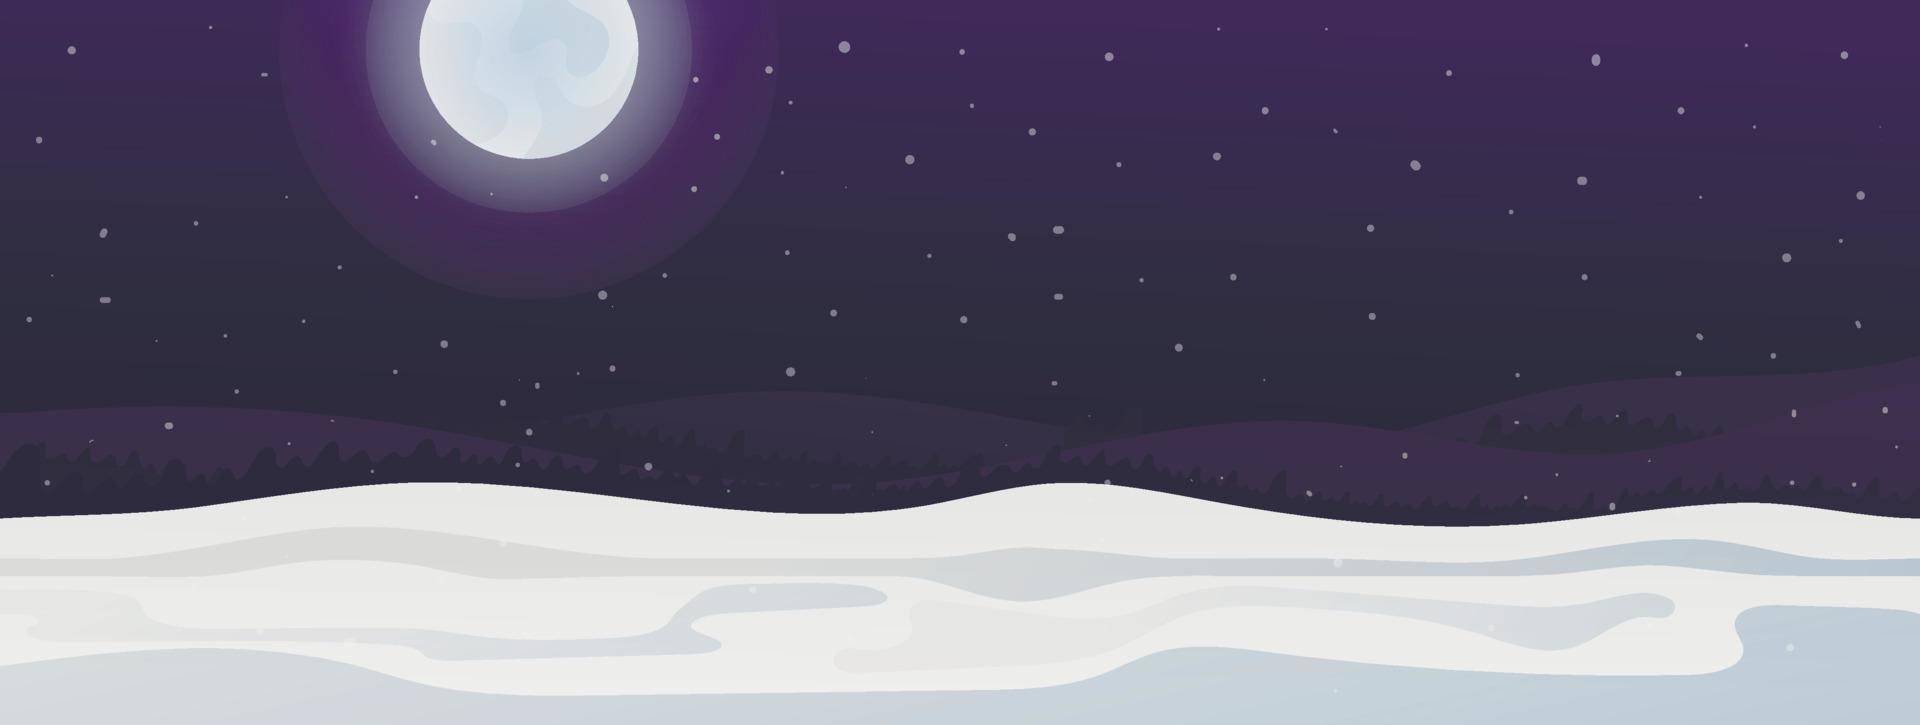 Vektor Winternachtlandschaft mit Schneefall. Hügel mit Schneeverwehungen, Sternenhimmel und Mond.